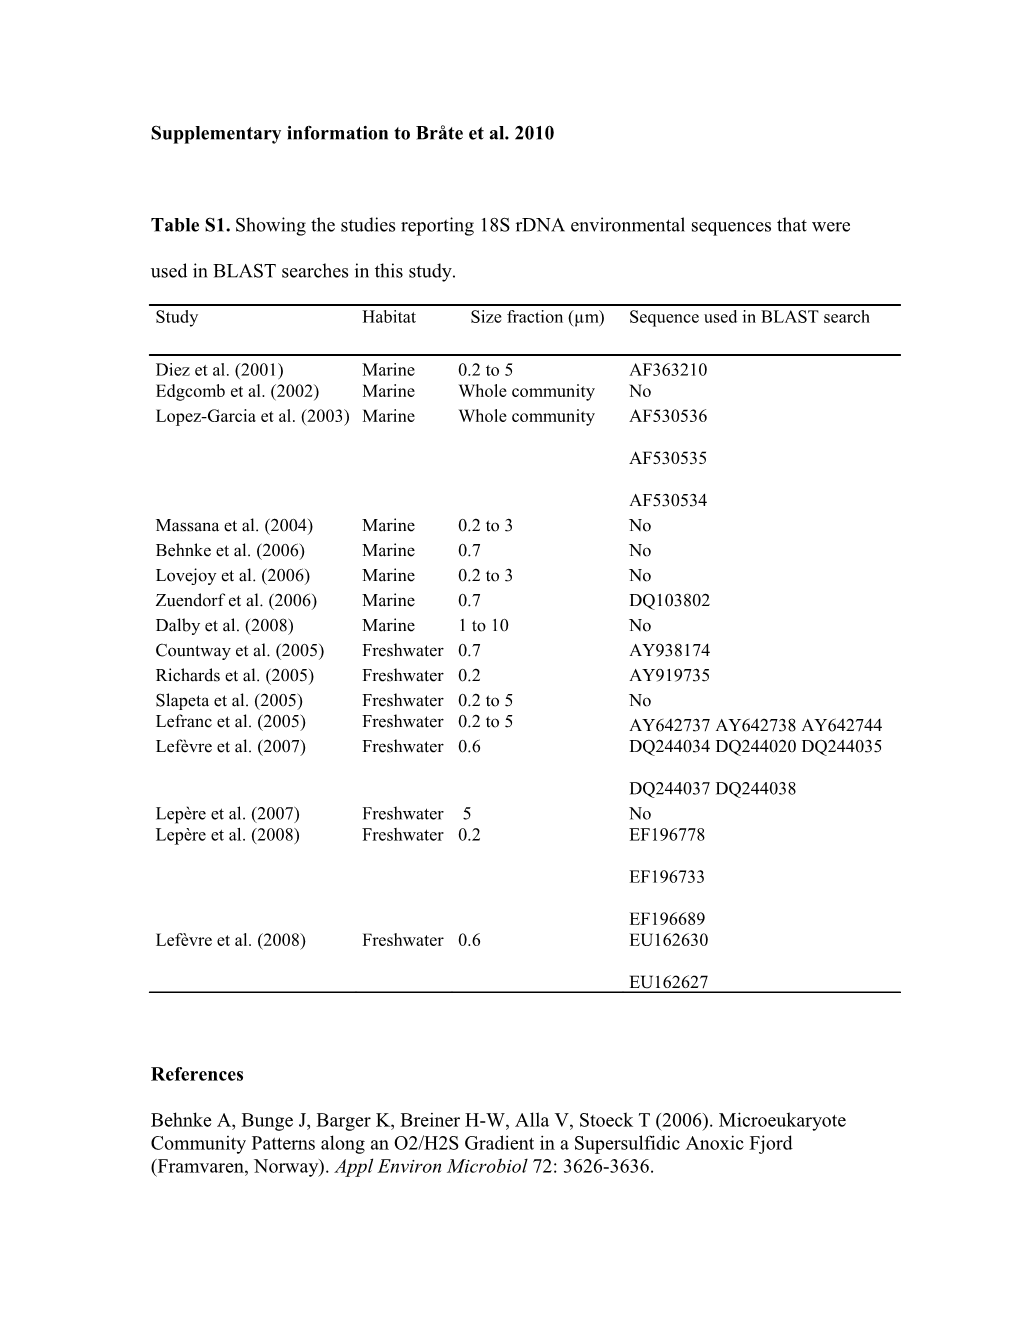 Supplementary Information to Bråte Et Al. 2010